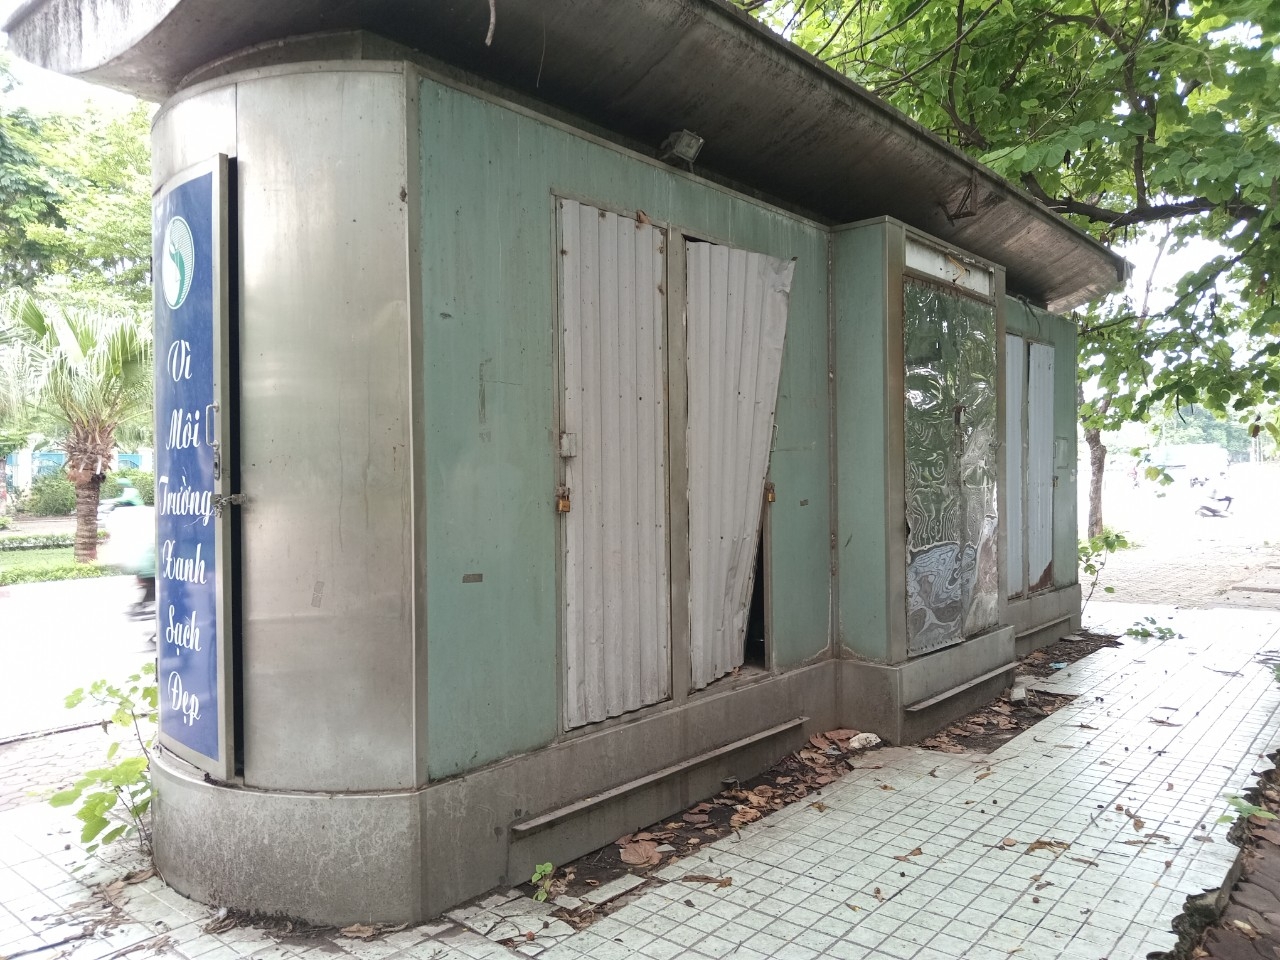 Hà Nội: Sớm giải quyết tình trạng xuống cấp của nhà vệ sinh công cộng